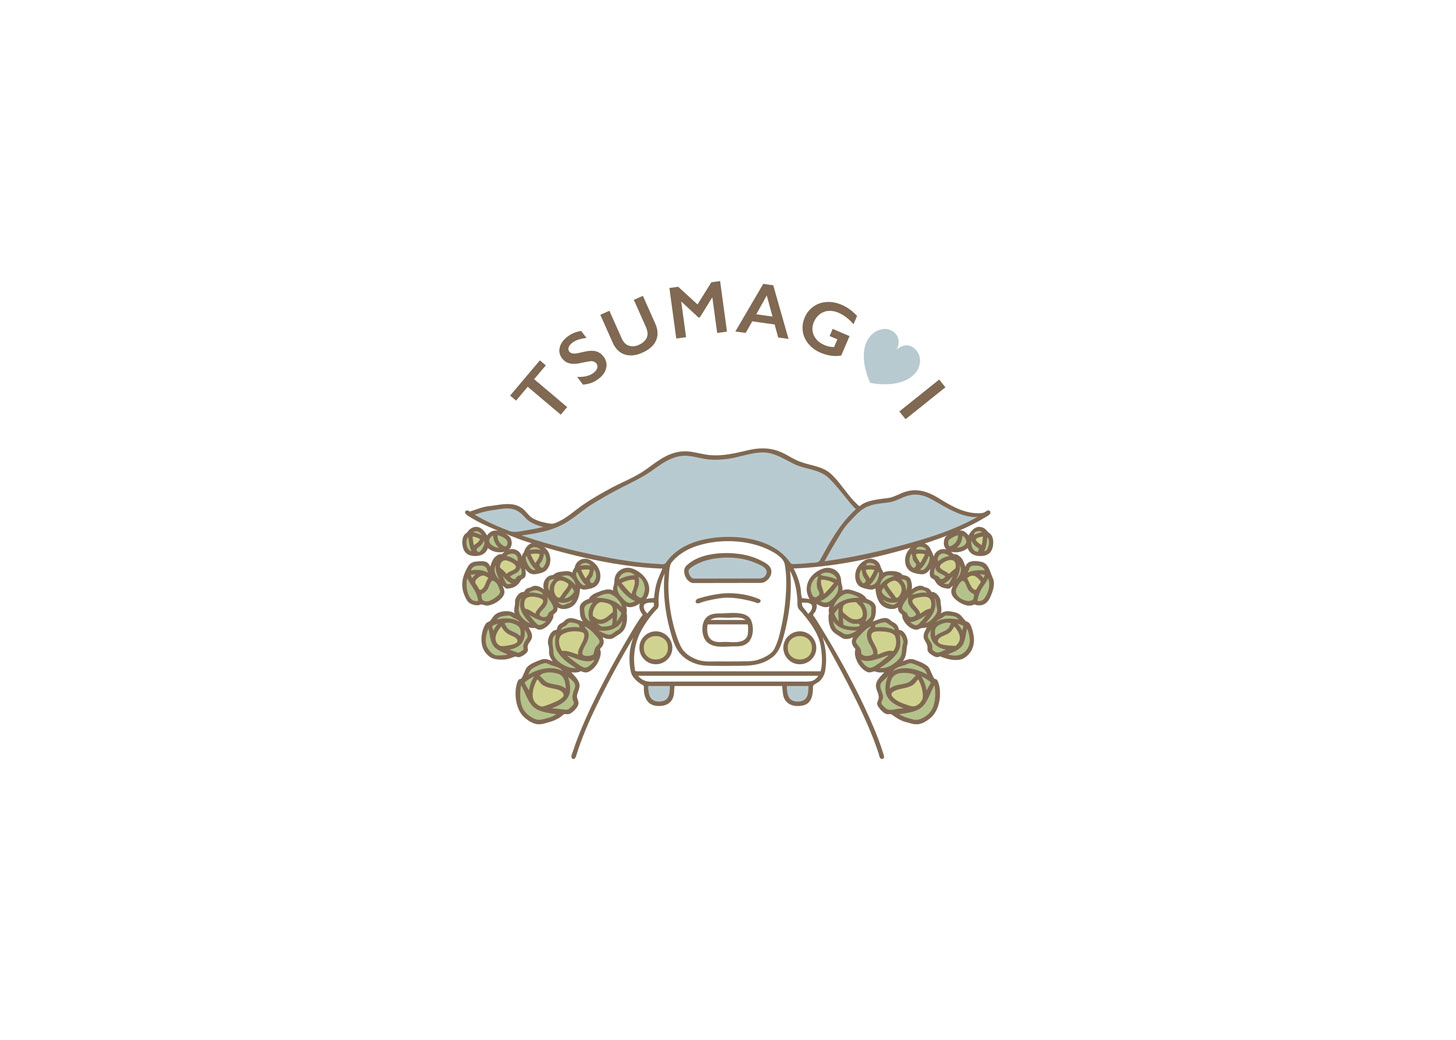 嬬恋村観光協会のロゴデザイン